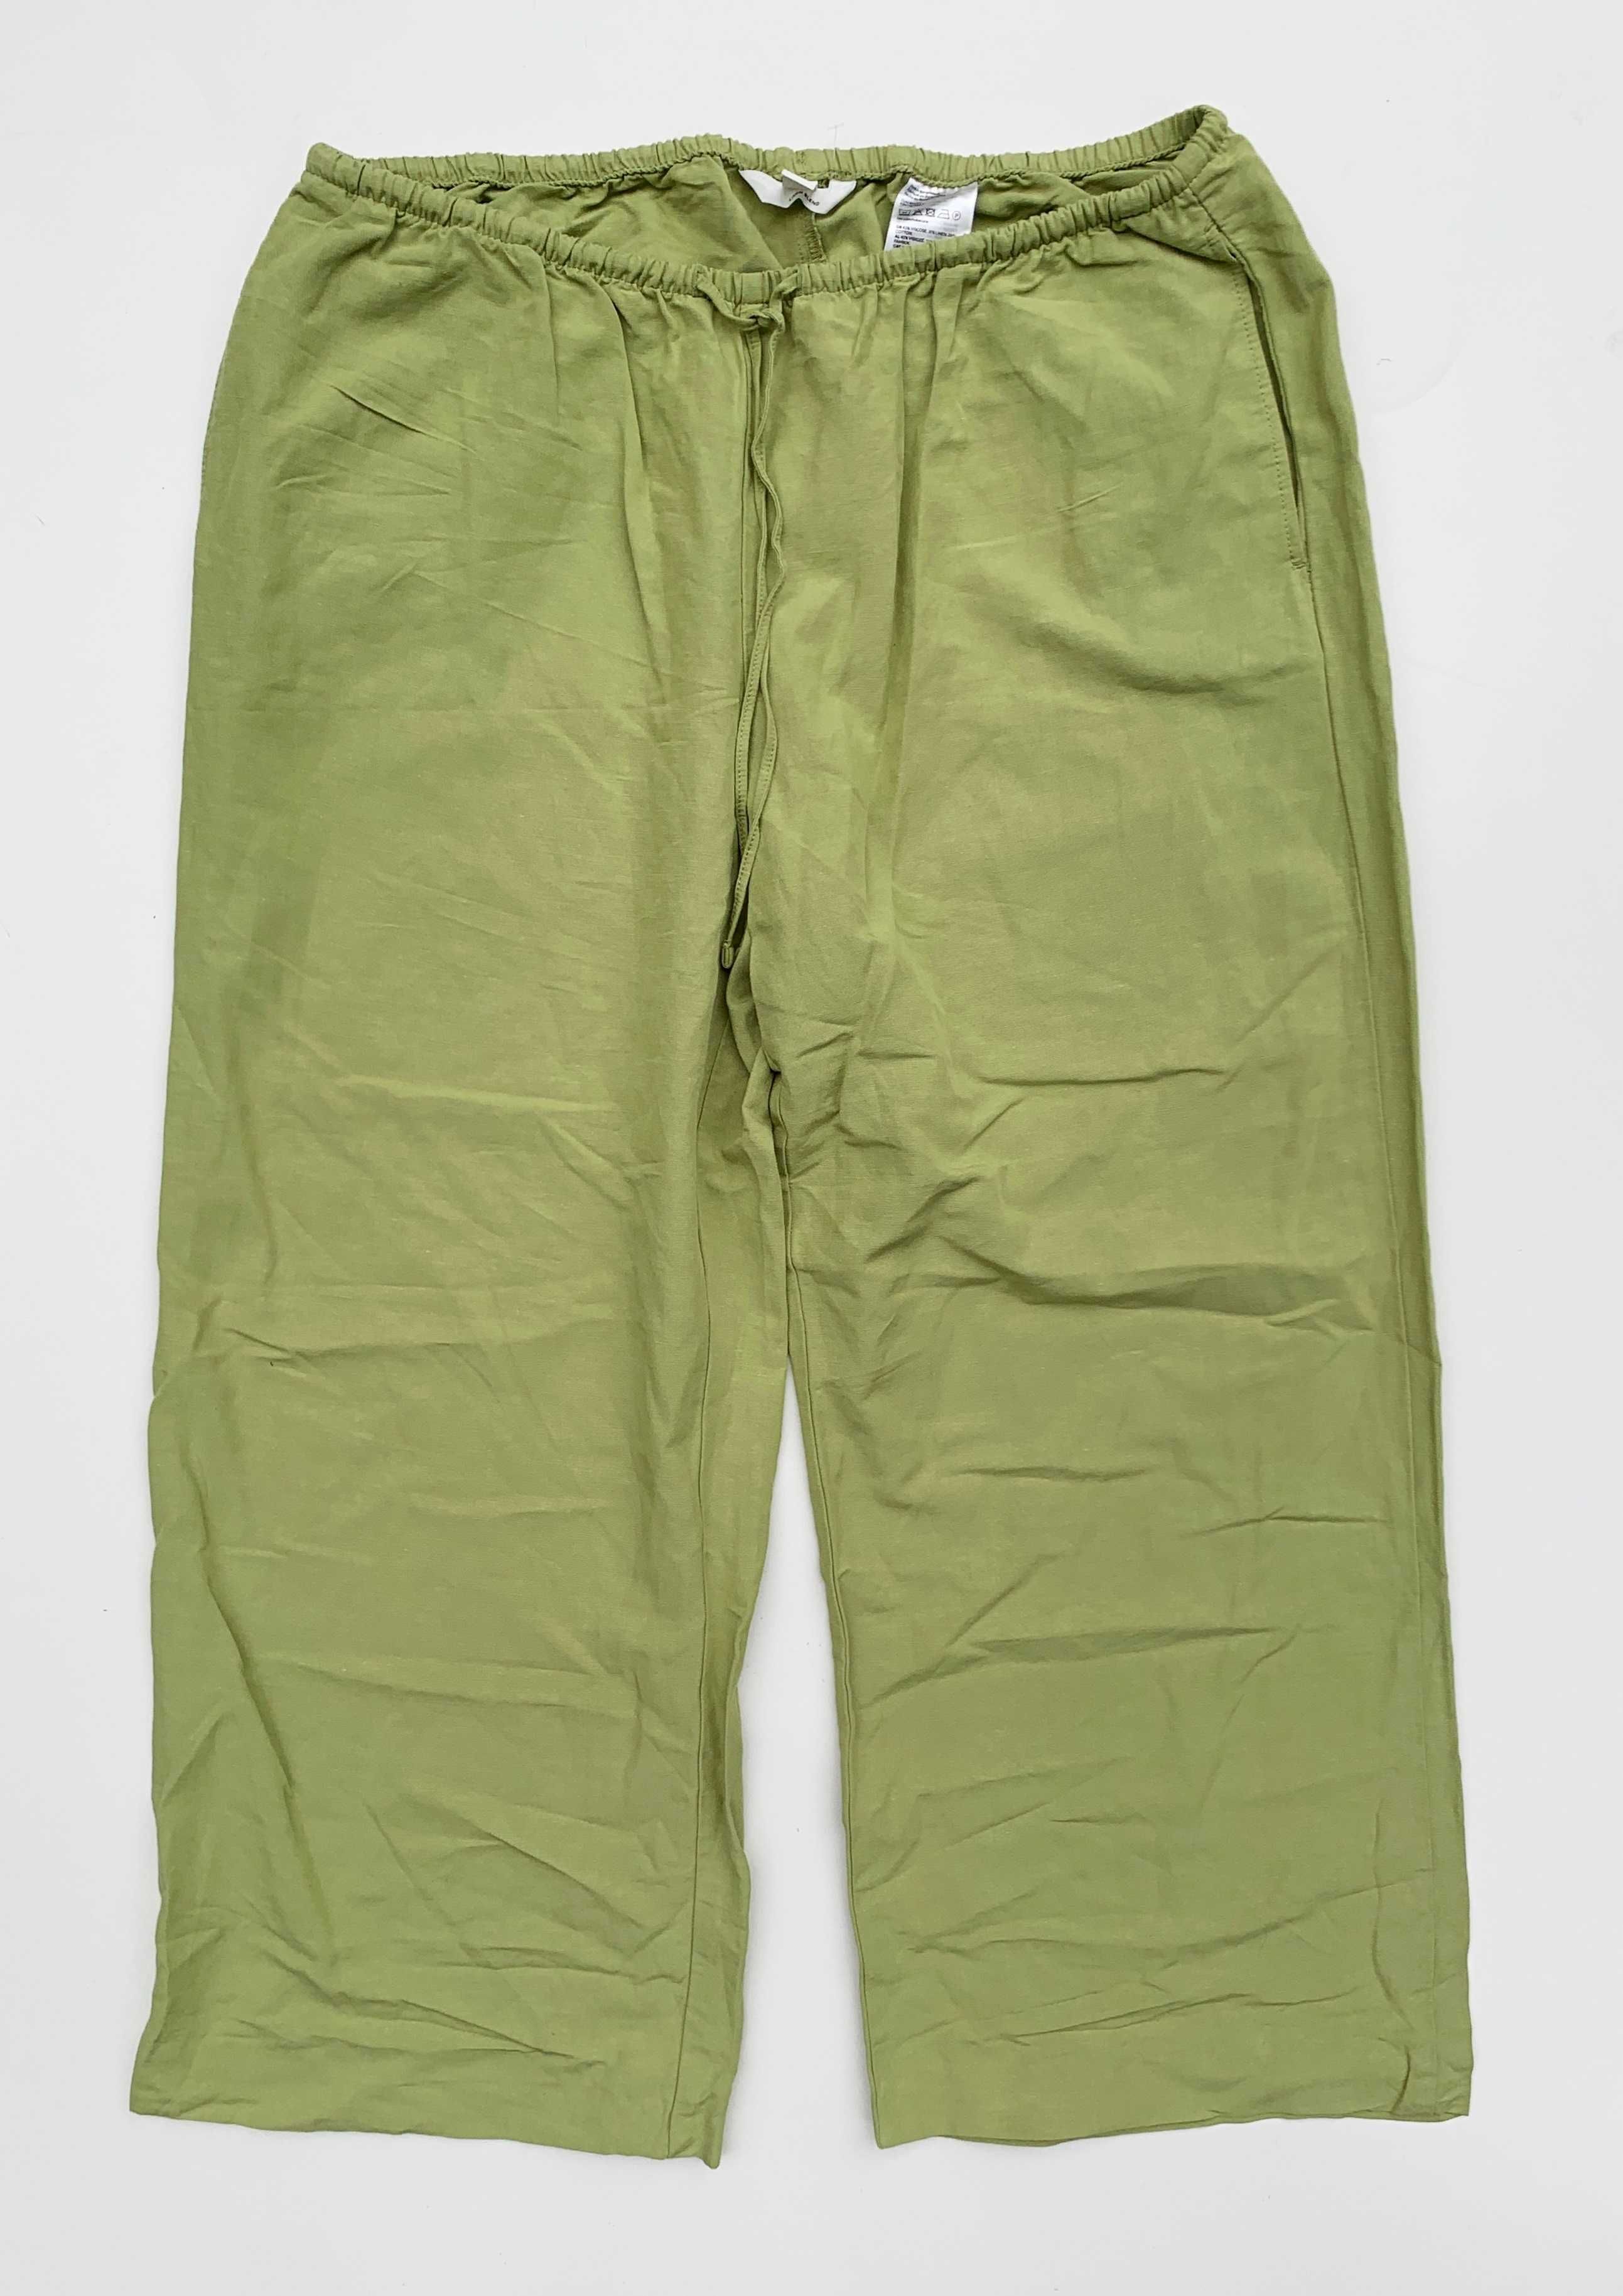 Spodnie Zielone Len Lniane H&M L 40 Proste Nogawki